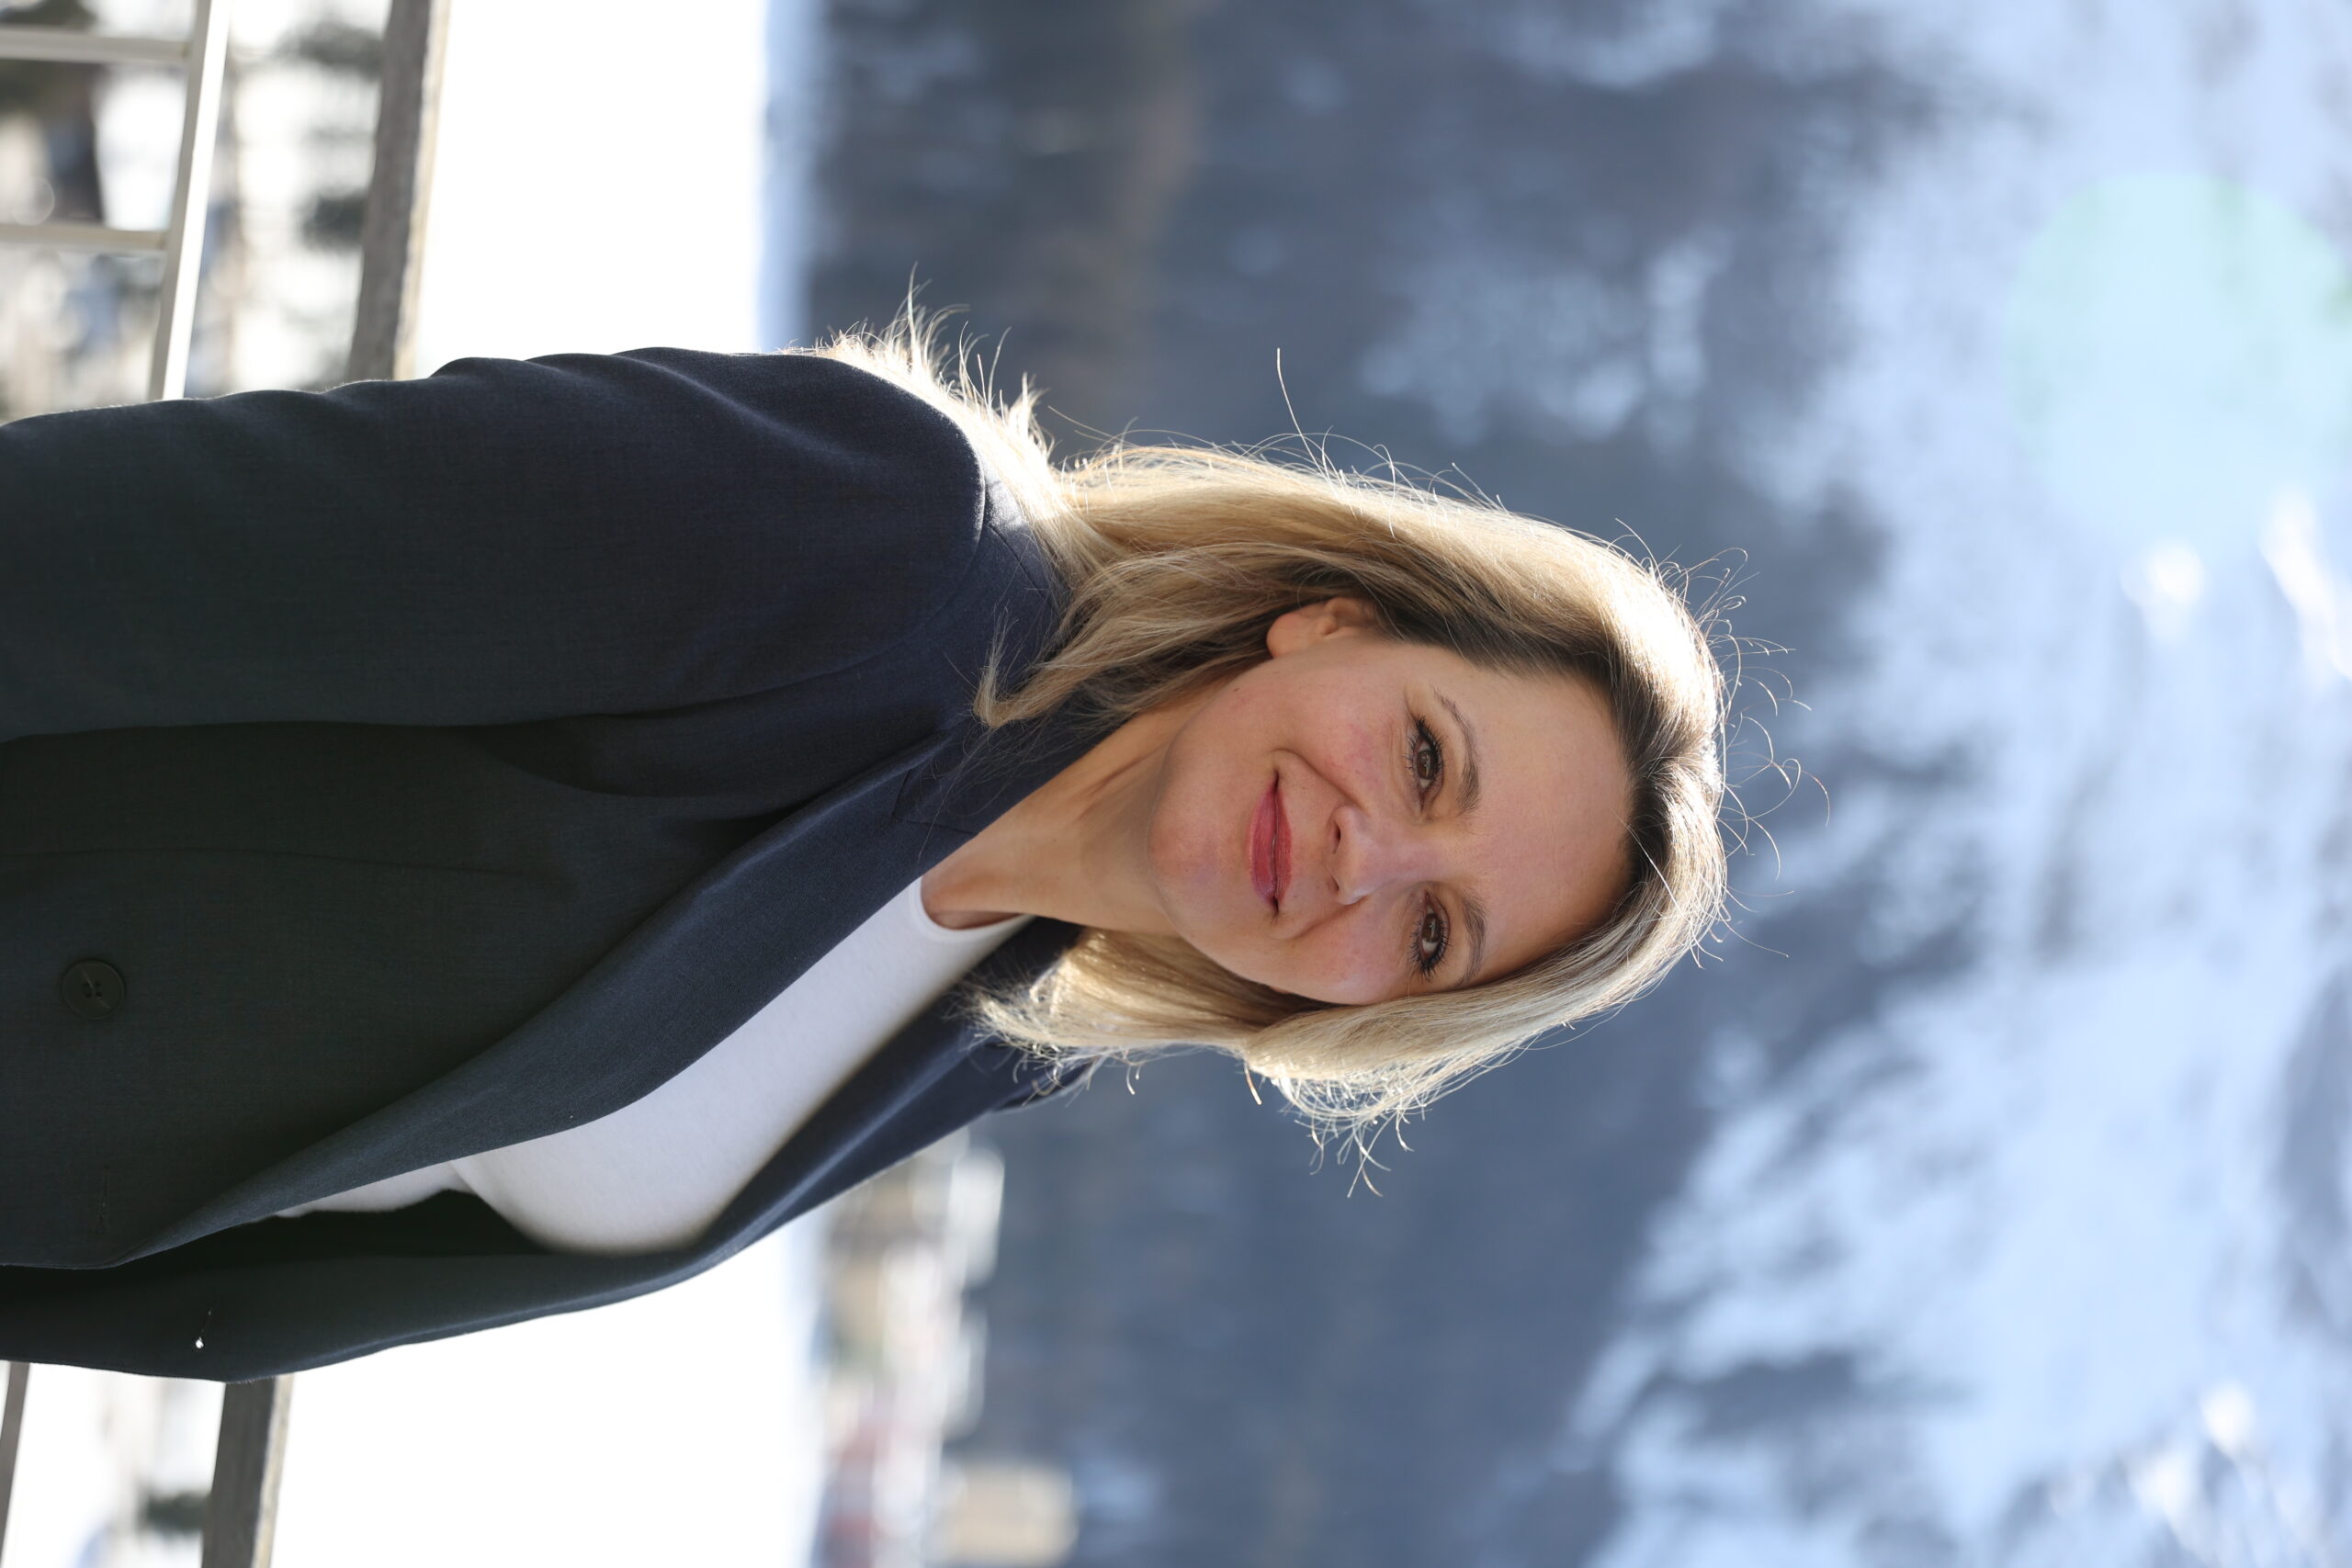 St. Moritz Tourismus appoints Marijana Jakic as CEO